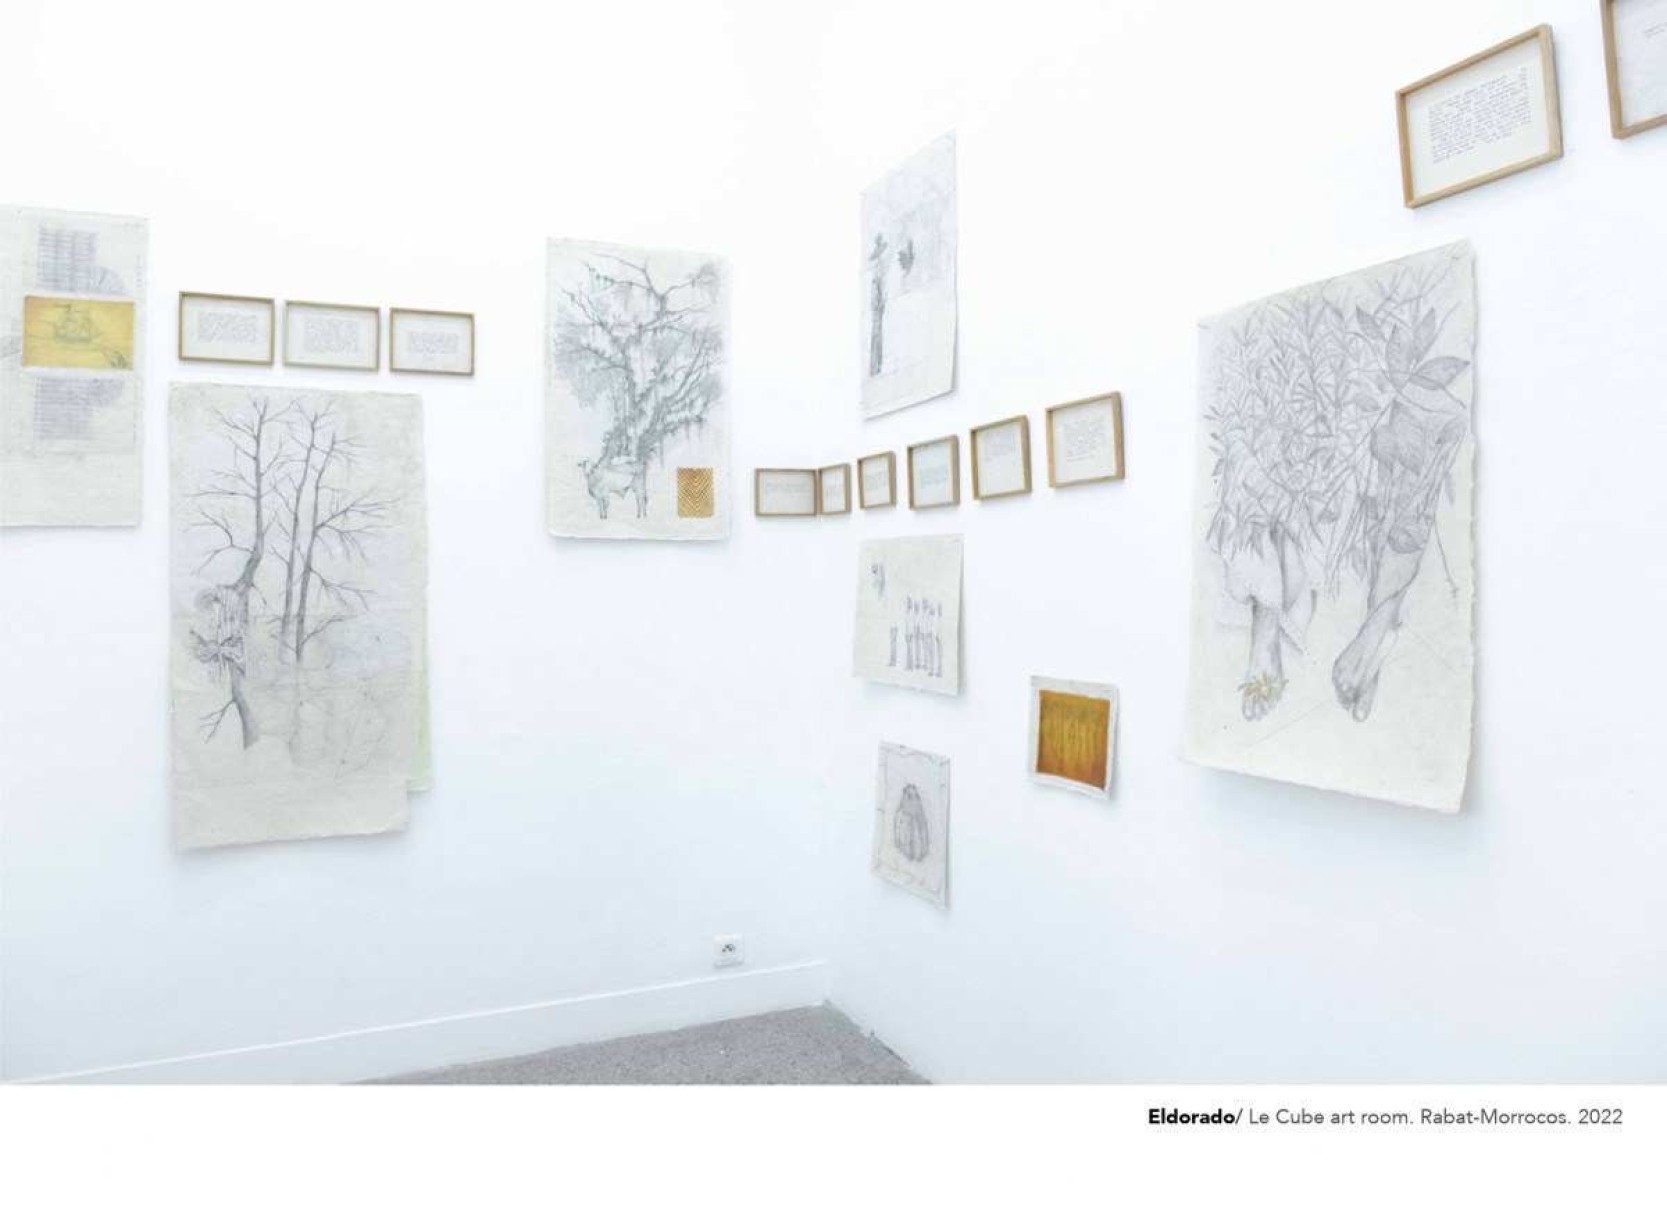 Galeria em Anápolis recebe três exposições de artistas mulheres